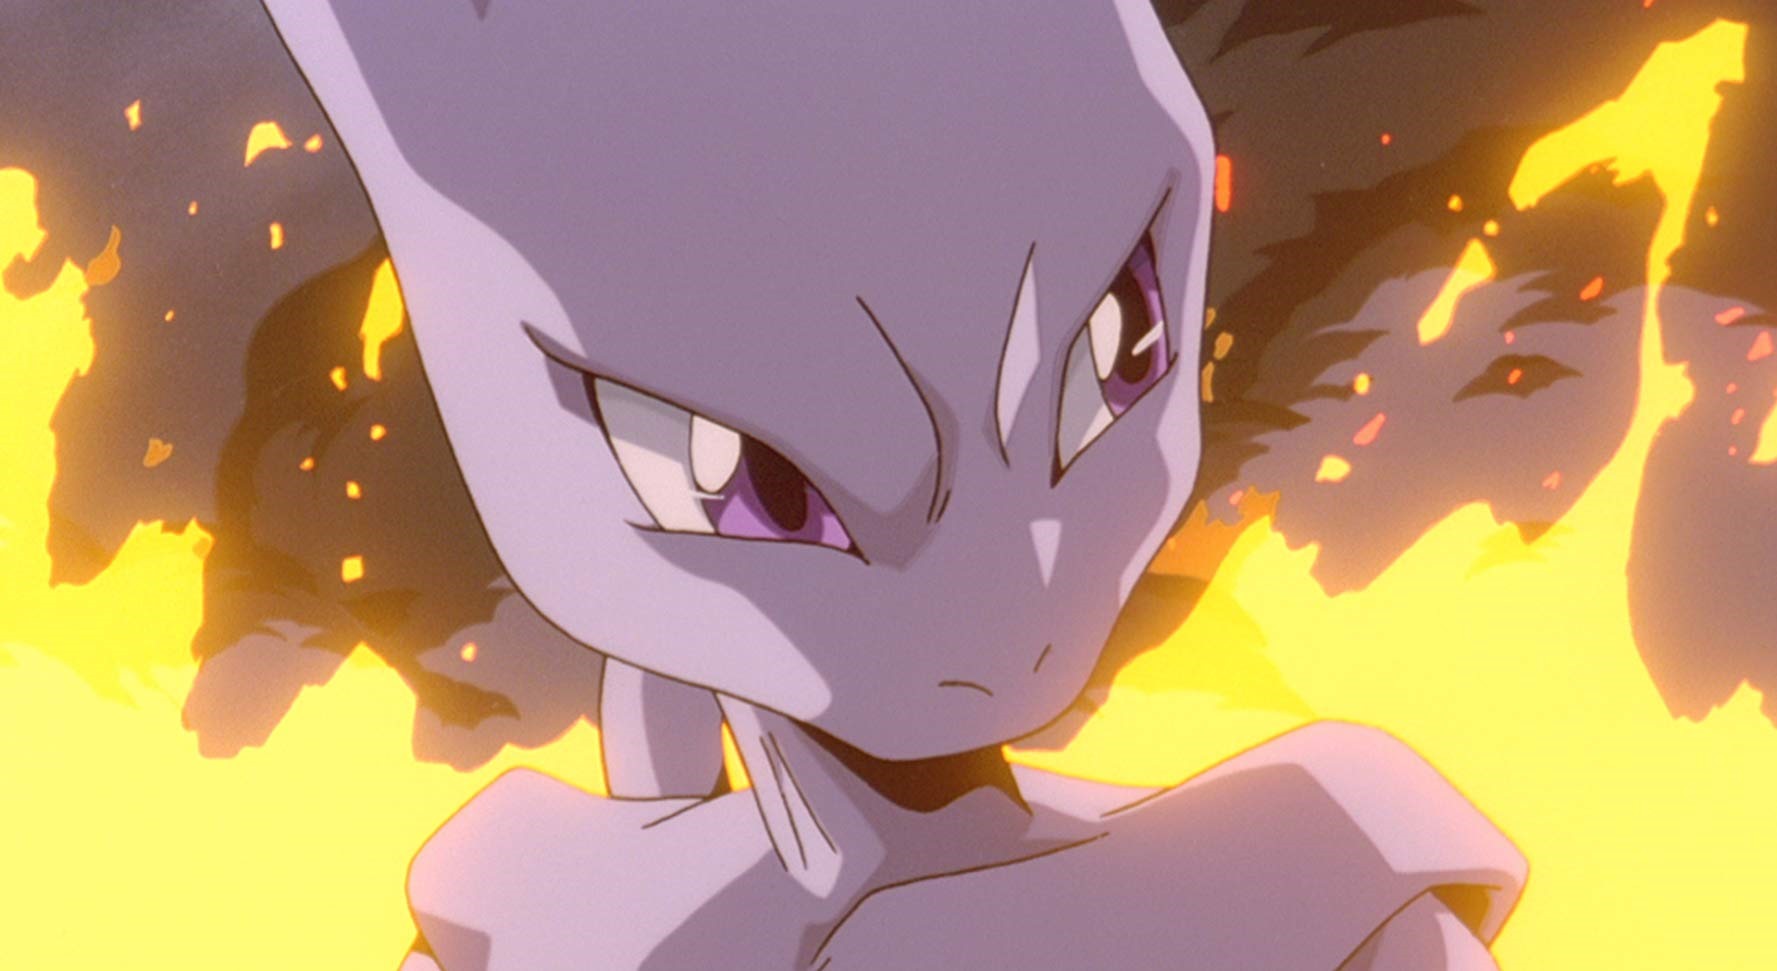 Mewtwo and Mew Battle in the Pokémon: Mewtwo Strikes Back—Evolution Manga